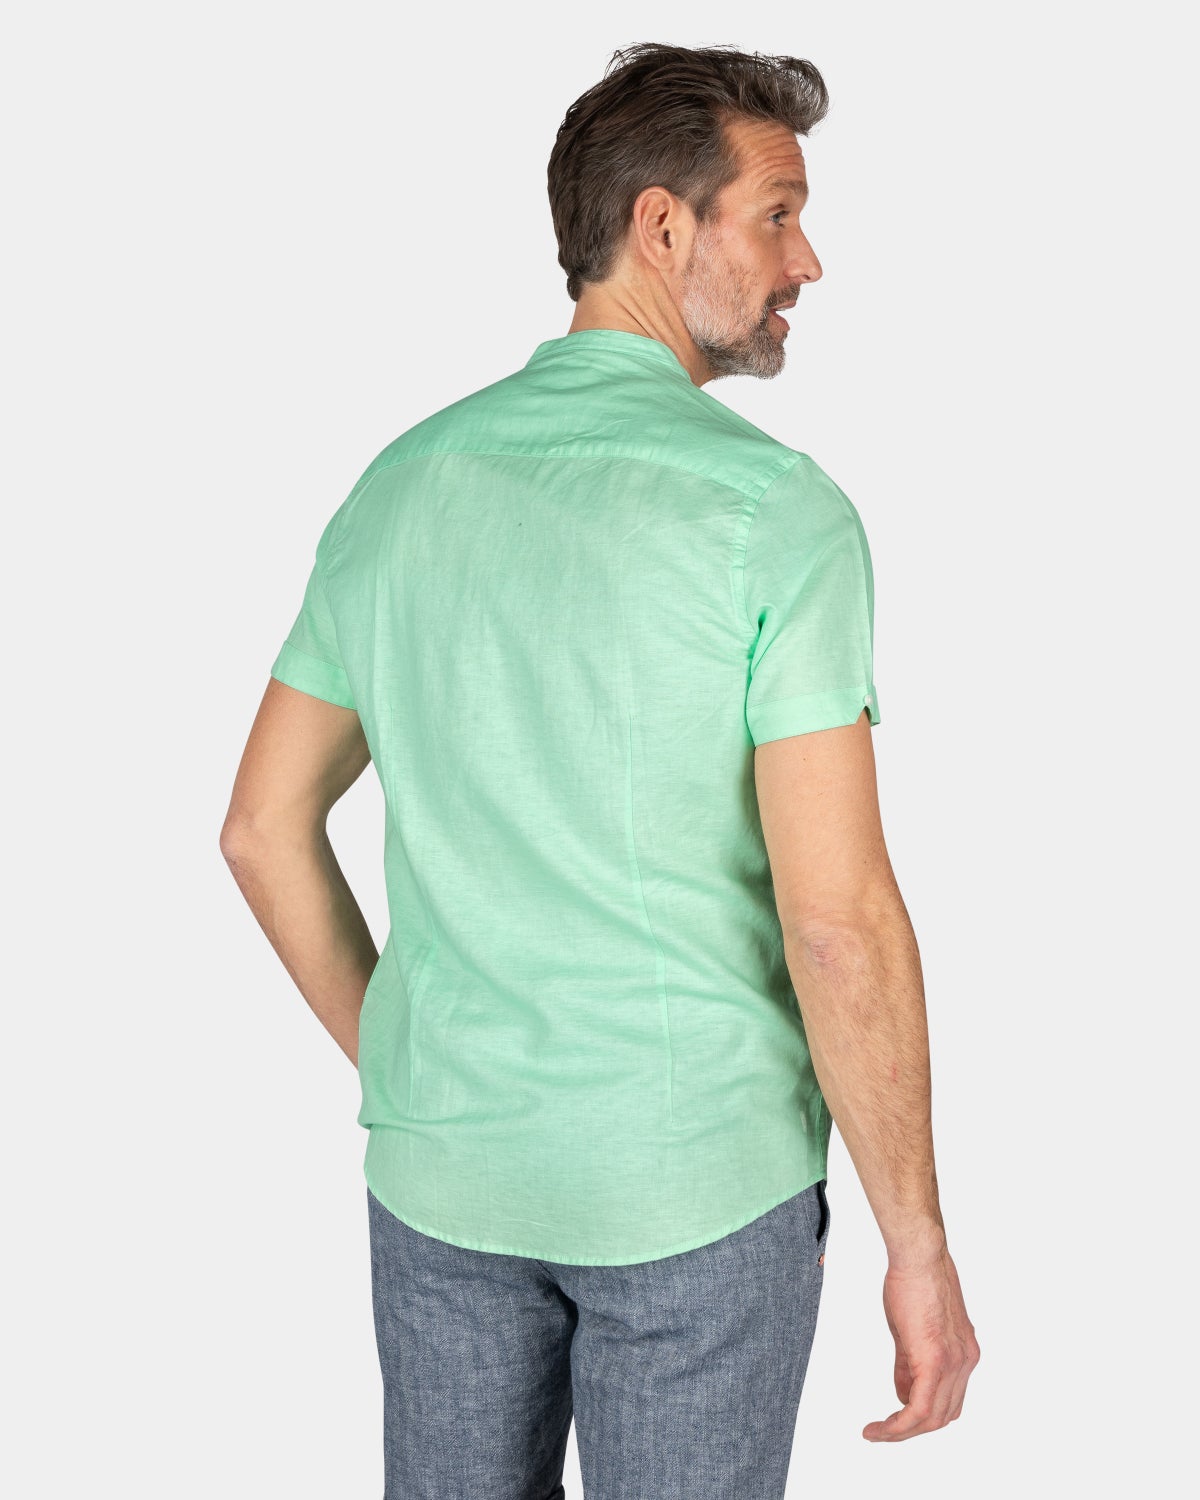 Overhemd zonder kraag met korte mouw - Teal Green